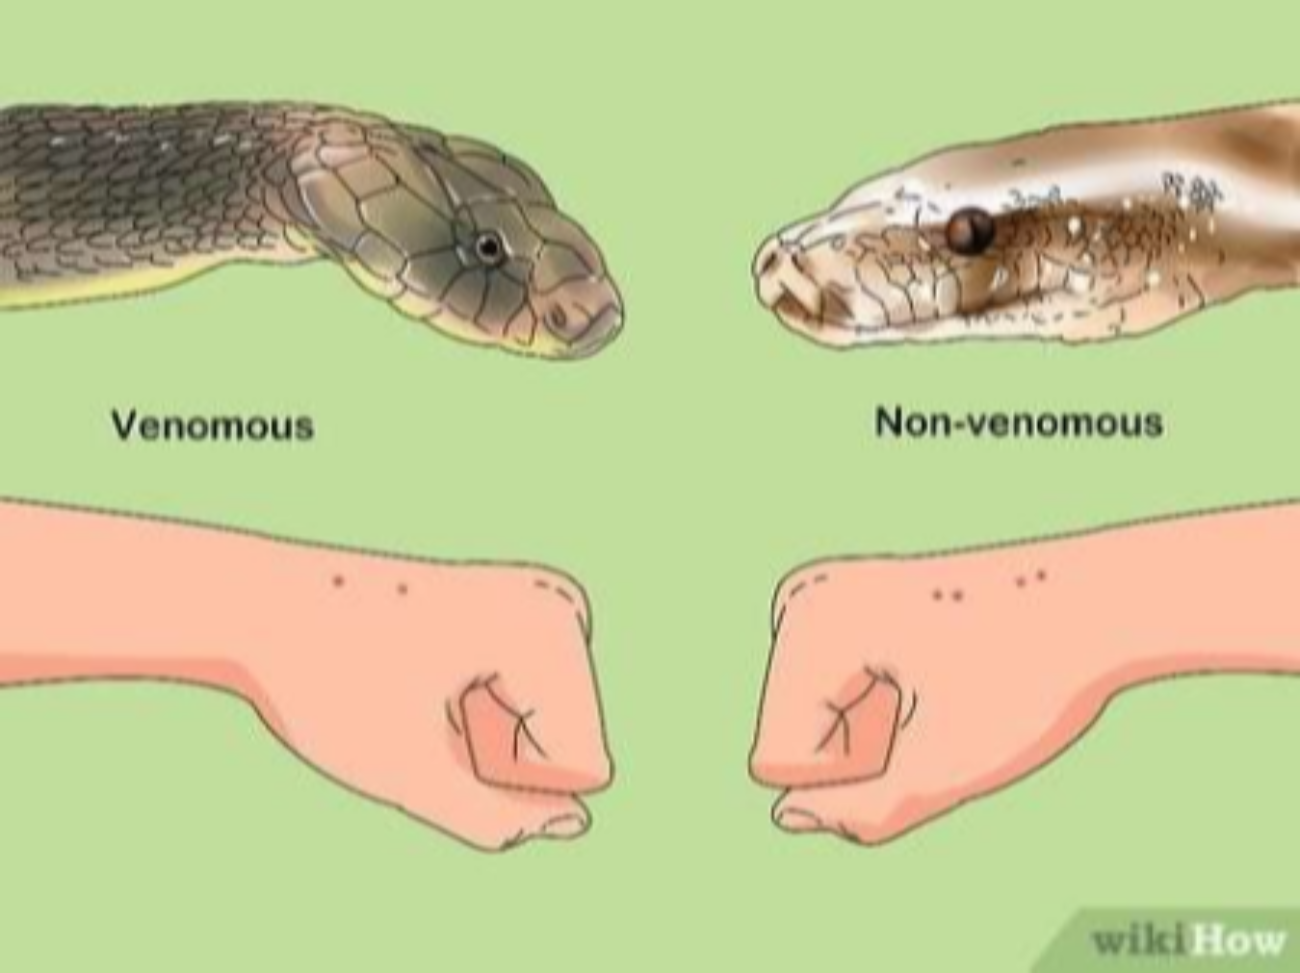 Описание укуса змеи. След от укуса неядовитой змеи. Как выглядят укусы змей. Как выглядит укус ядовитой змеи. Место укуса змеи гадюки.